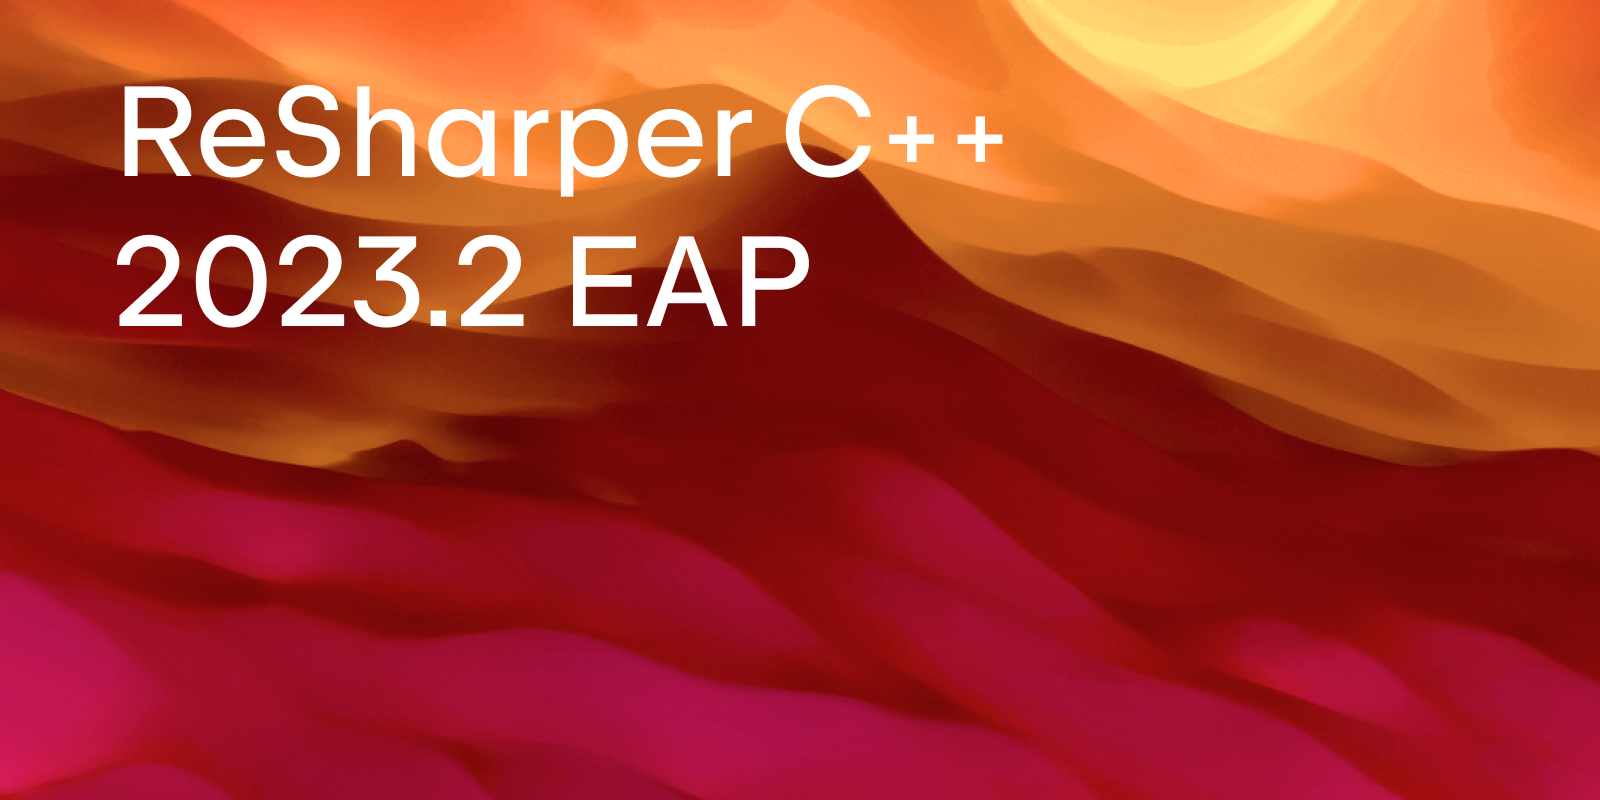 ReSharper C++ 2023.2 EAP